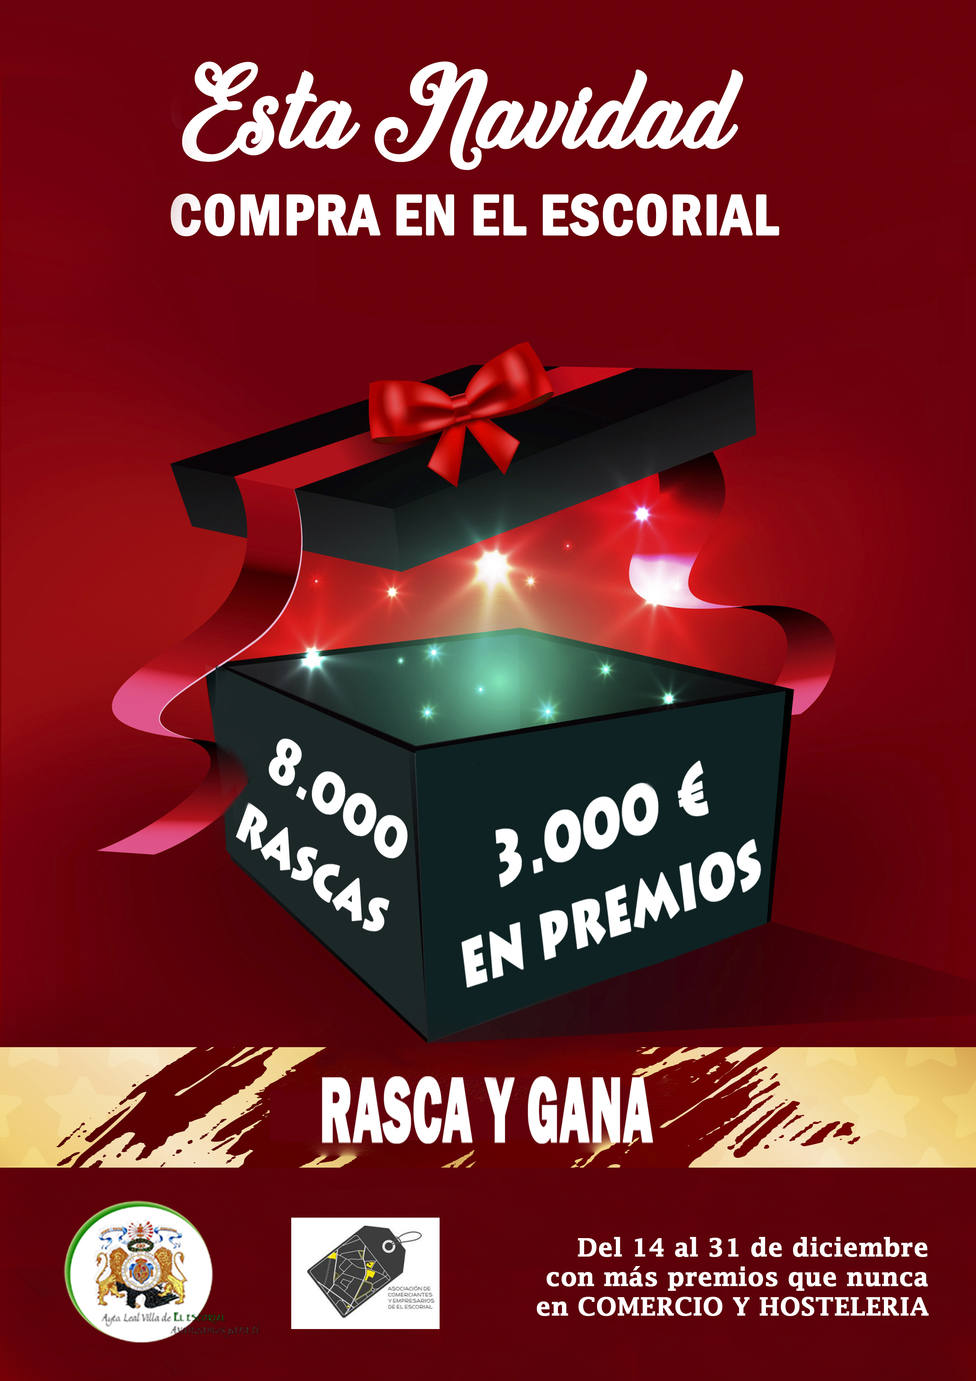 Campaña navideña para impulsar el comercio local en El Escorial